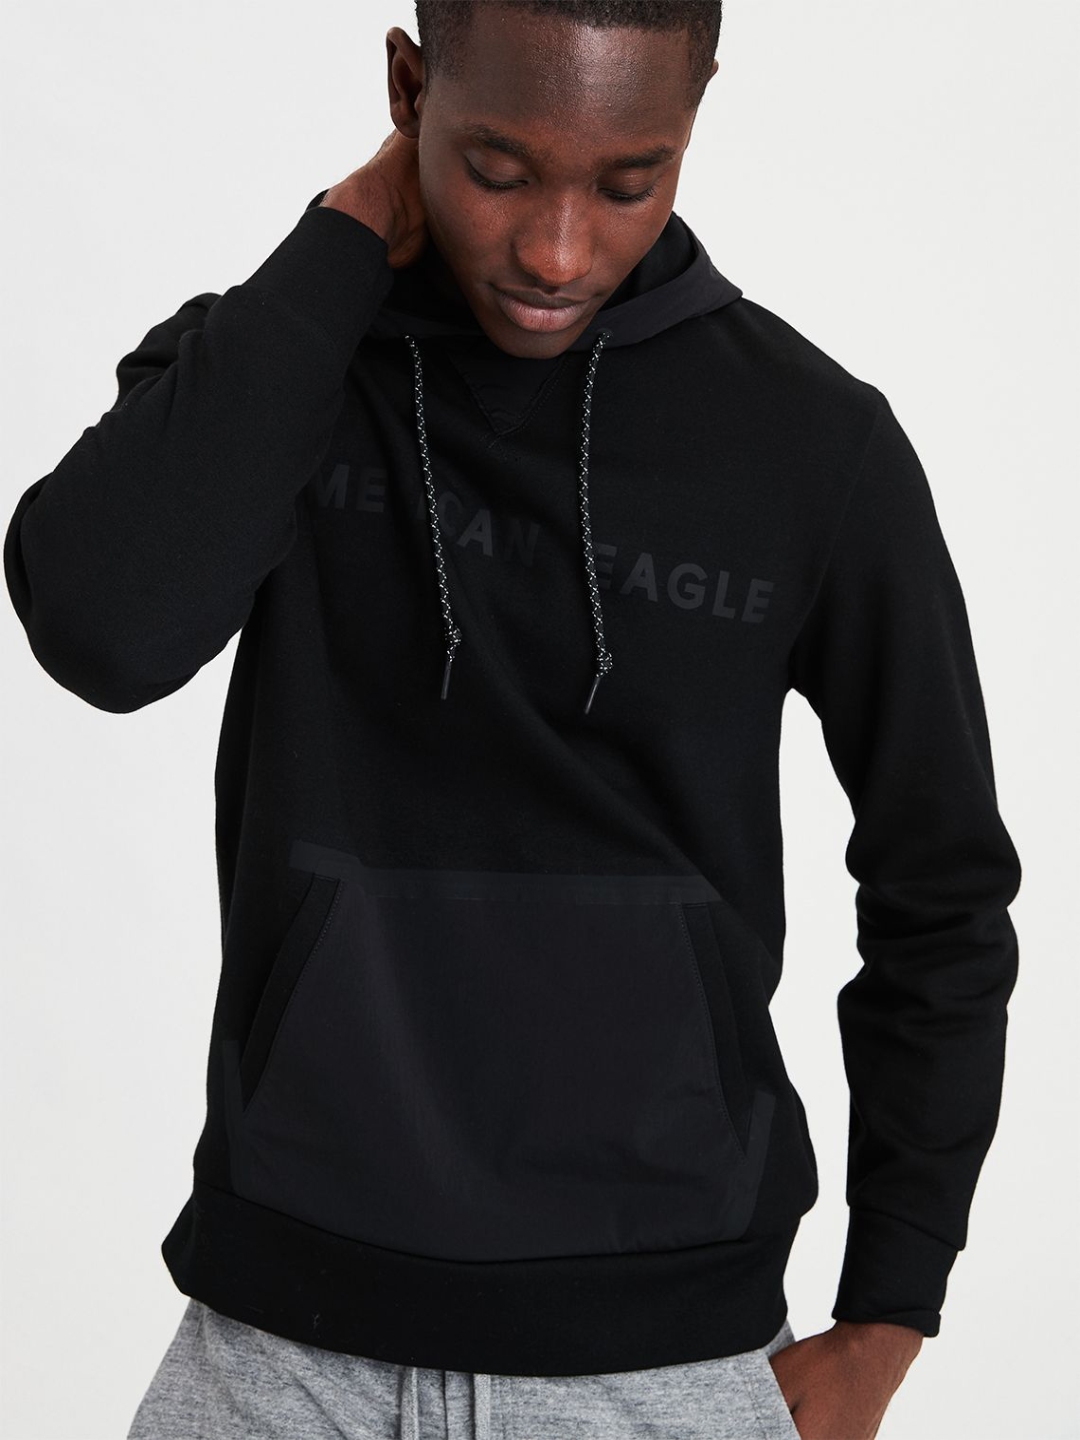 american eagle black hoodie